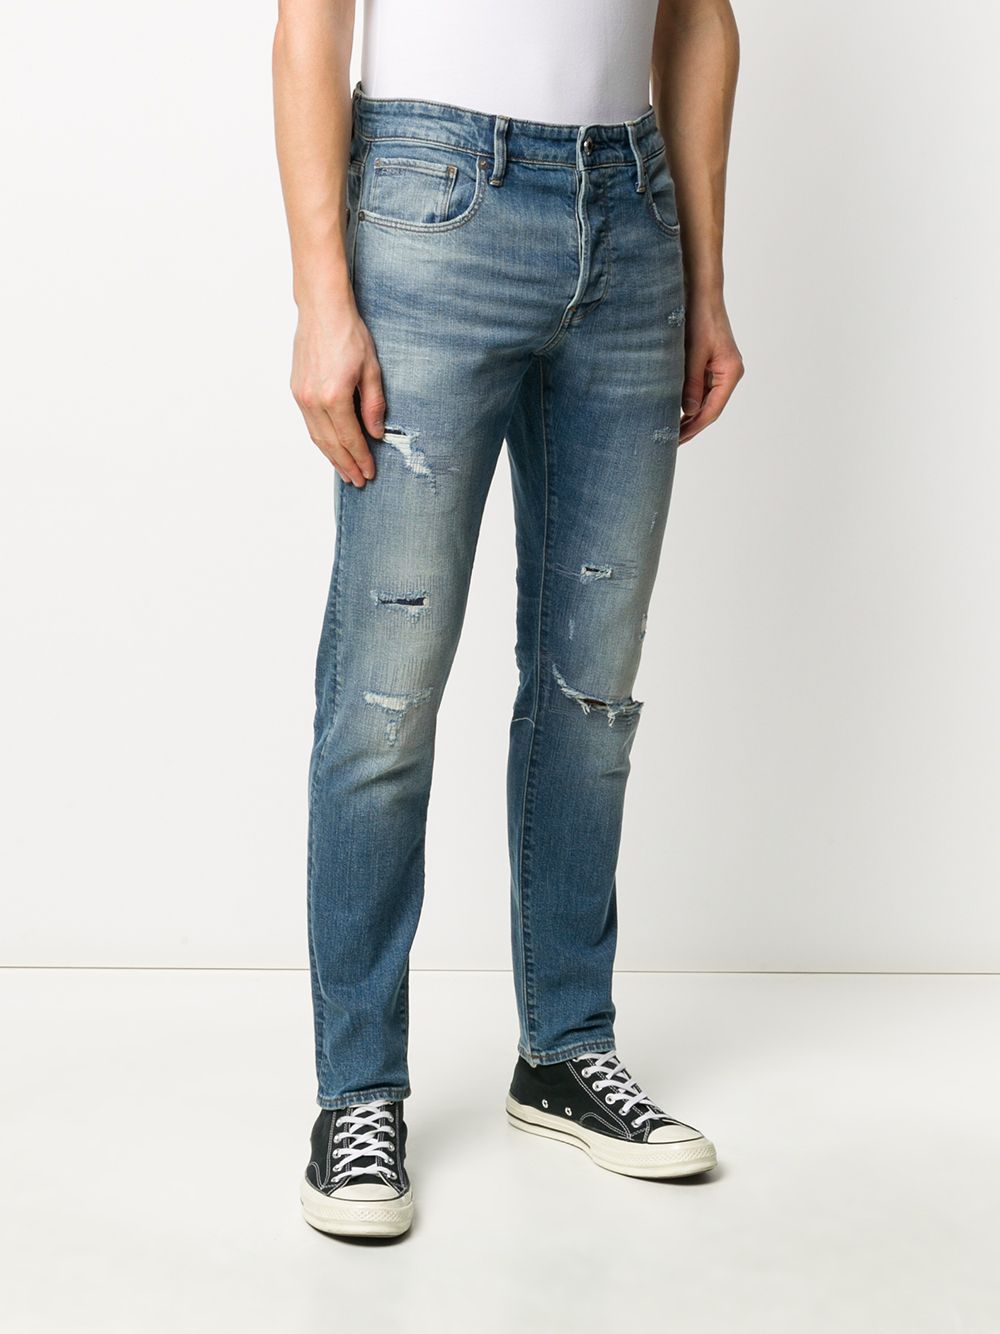 фото G-star raw узкие джинсы с заниженной талией